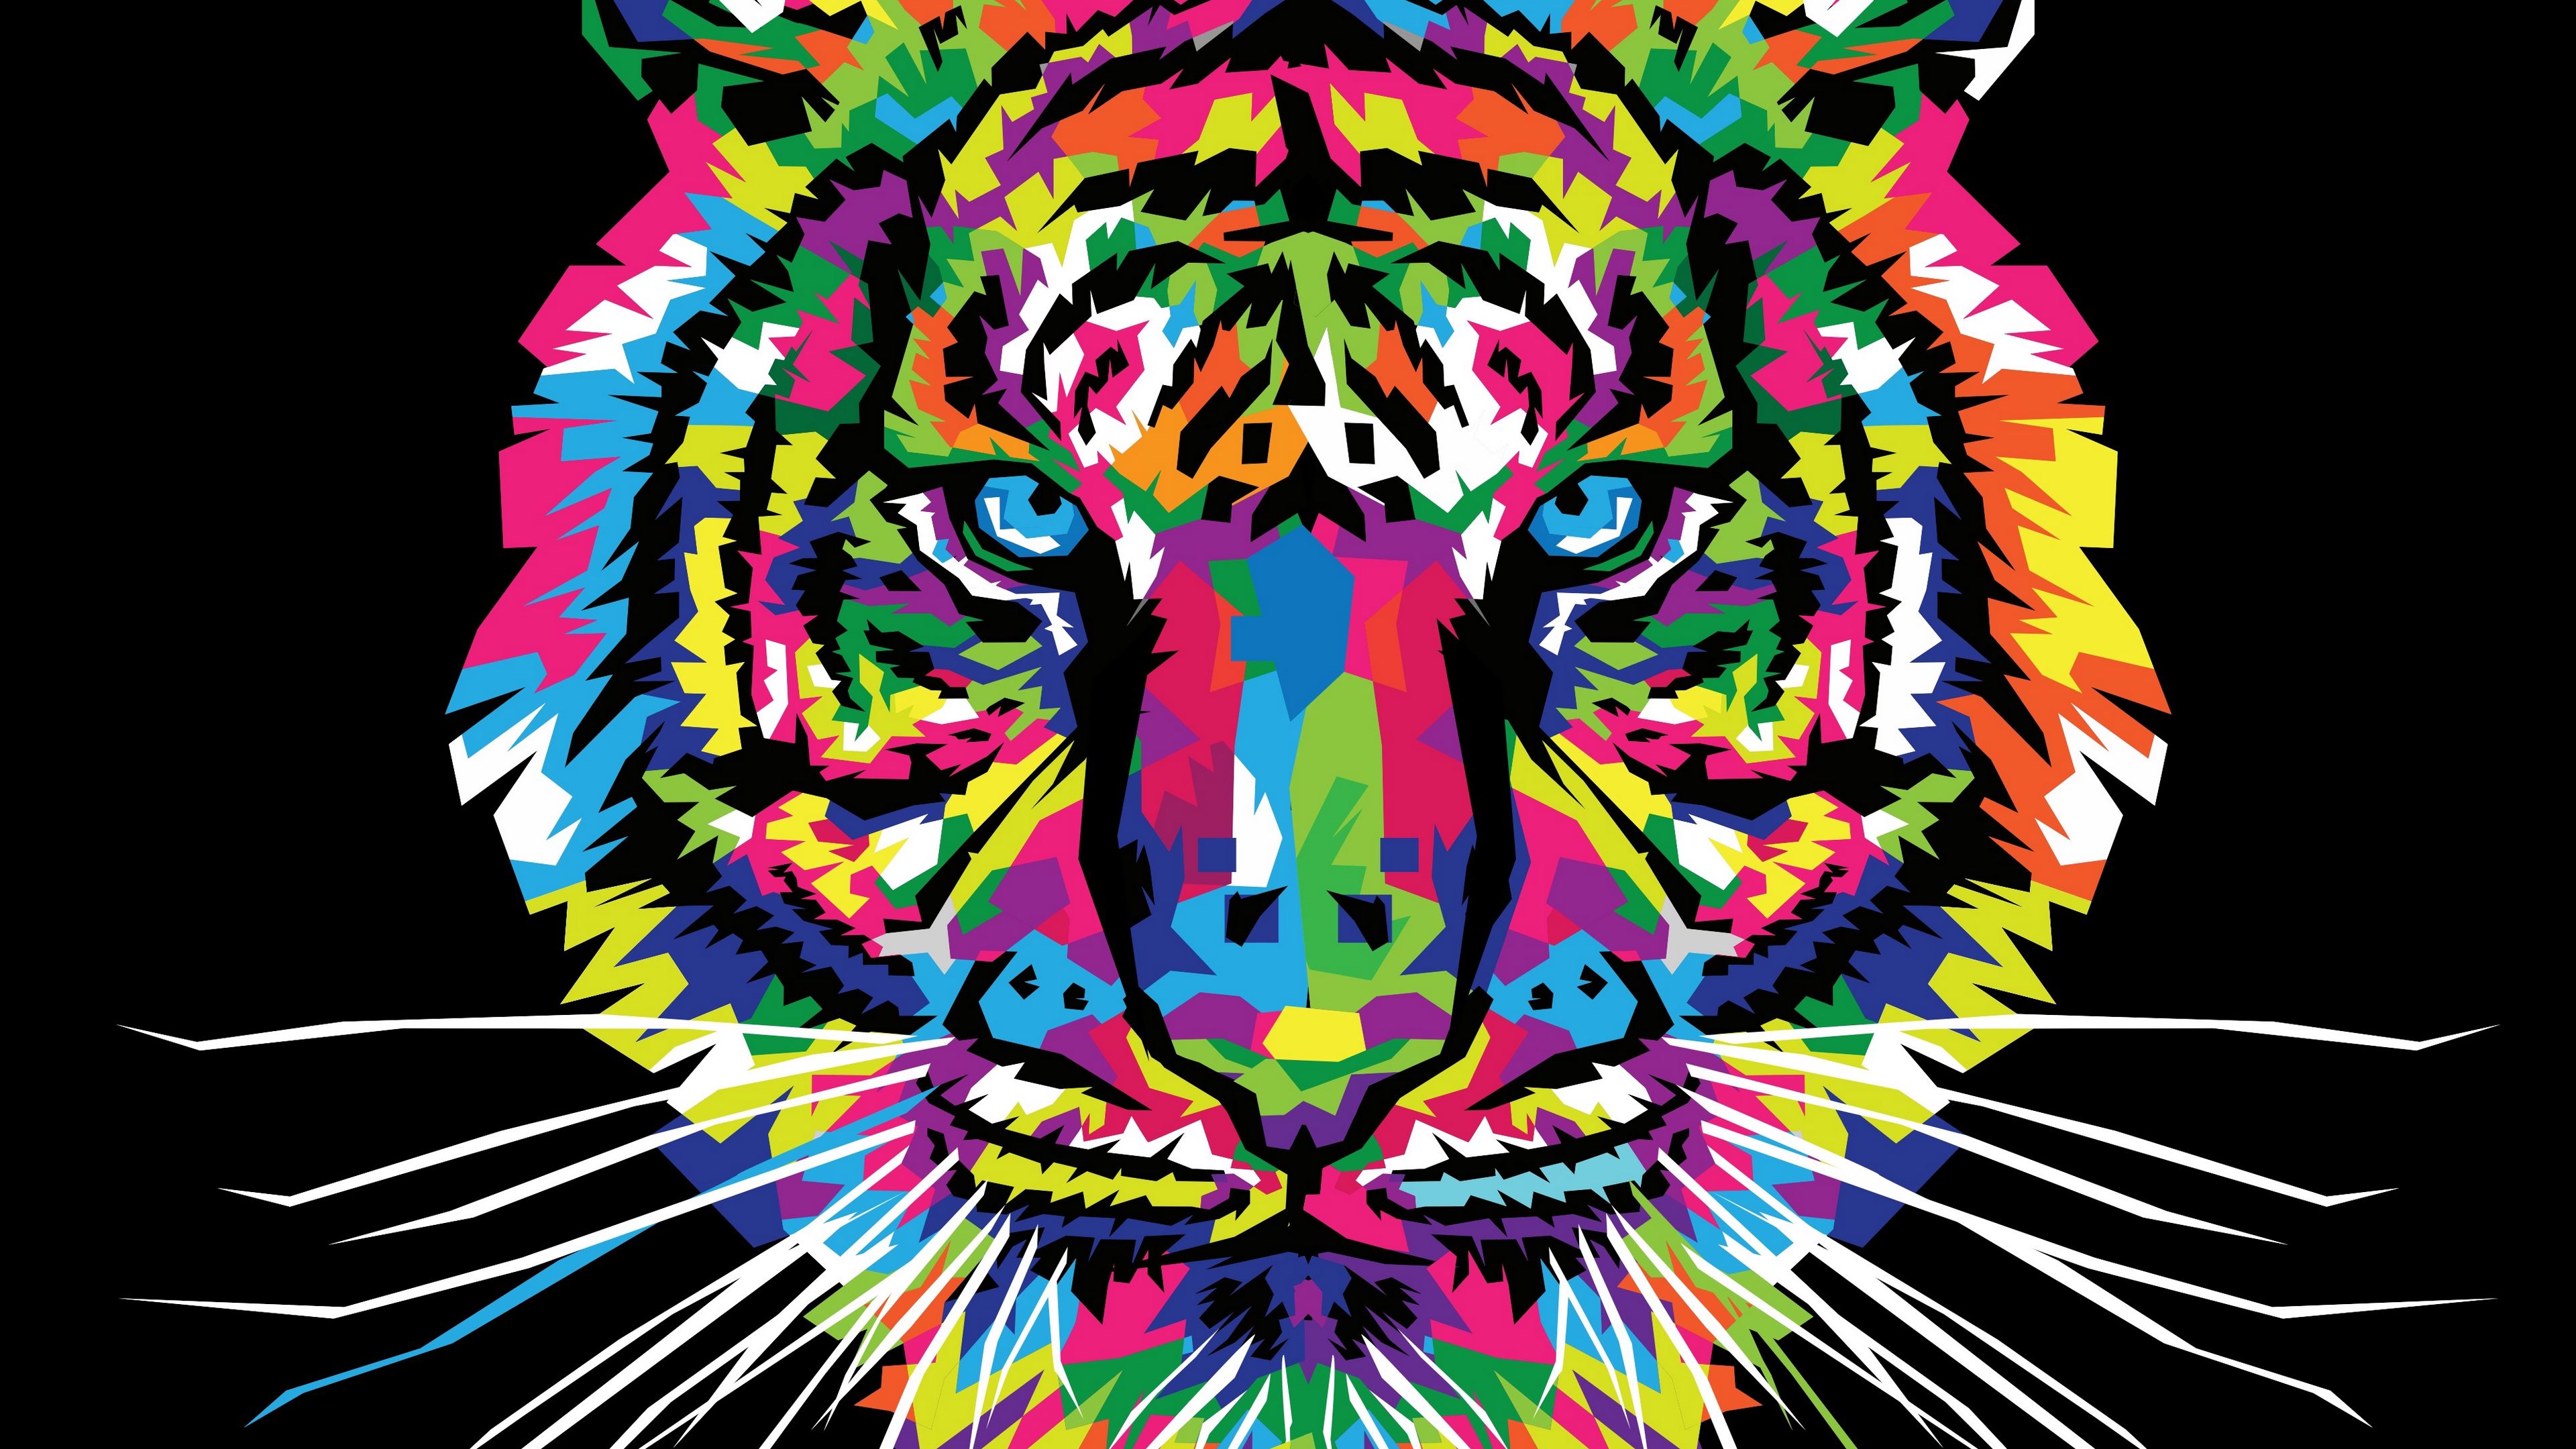 rainbow tiger wallpaper